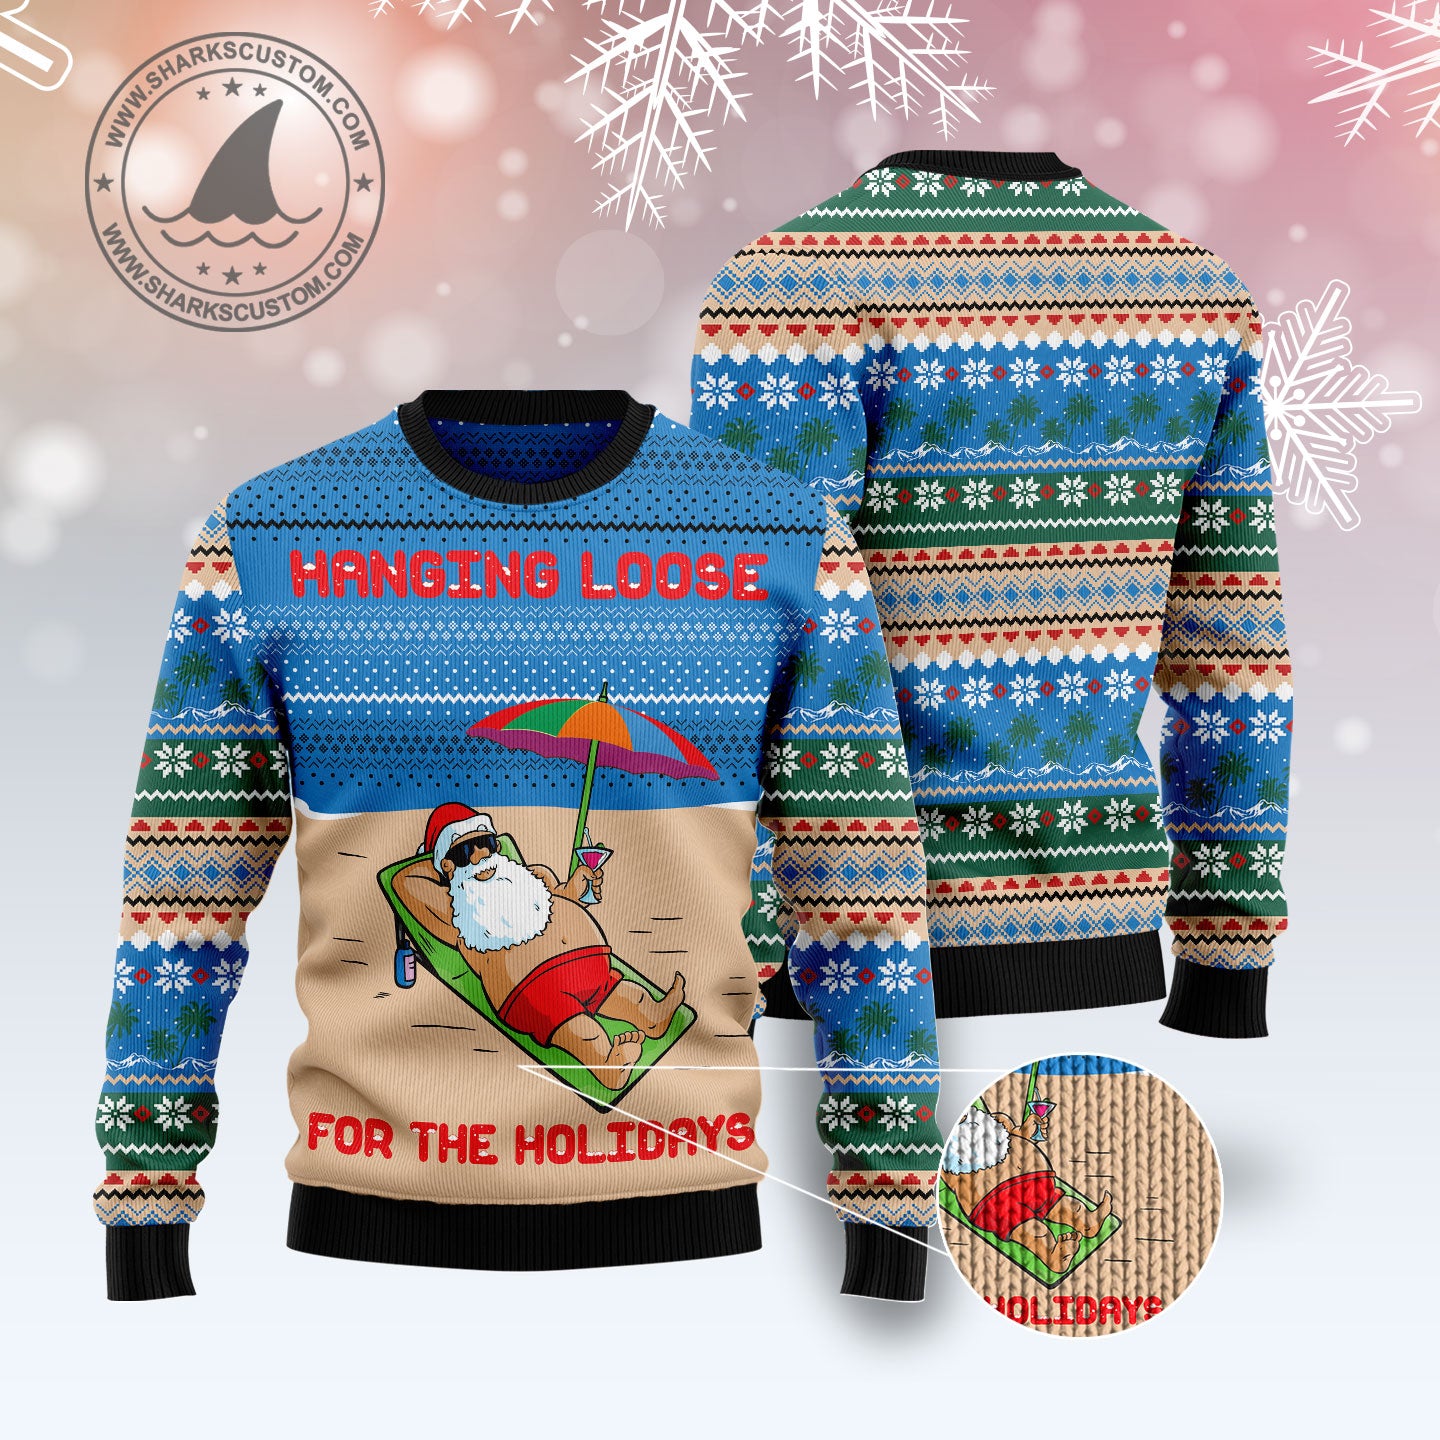 Santa Claus Holiday TG51019 - Ugly Christmas Sweater